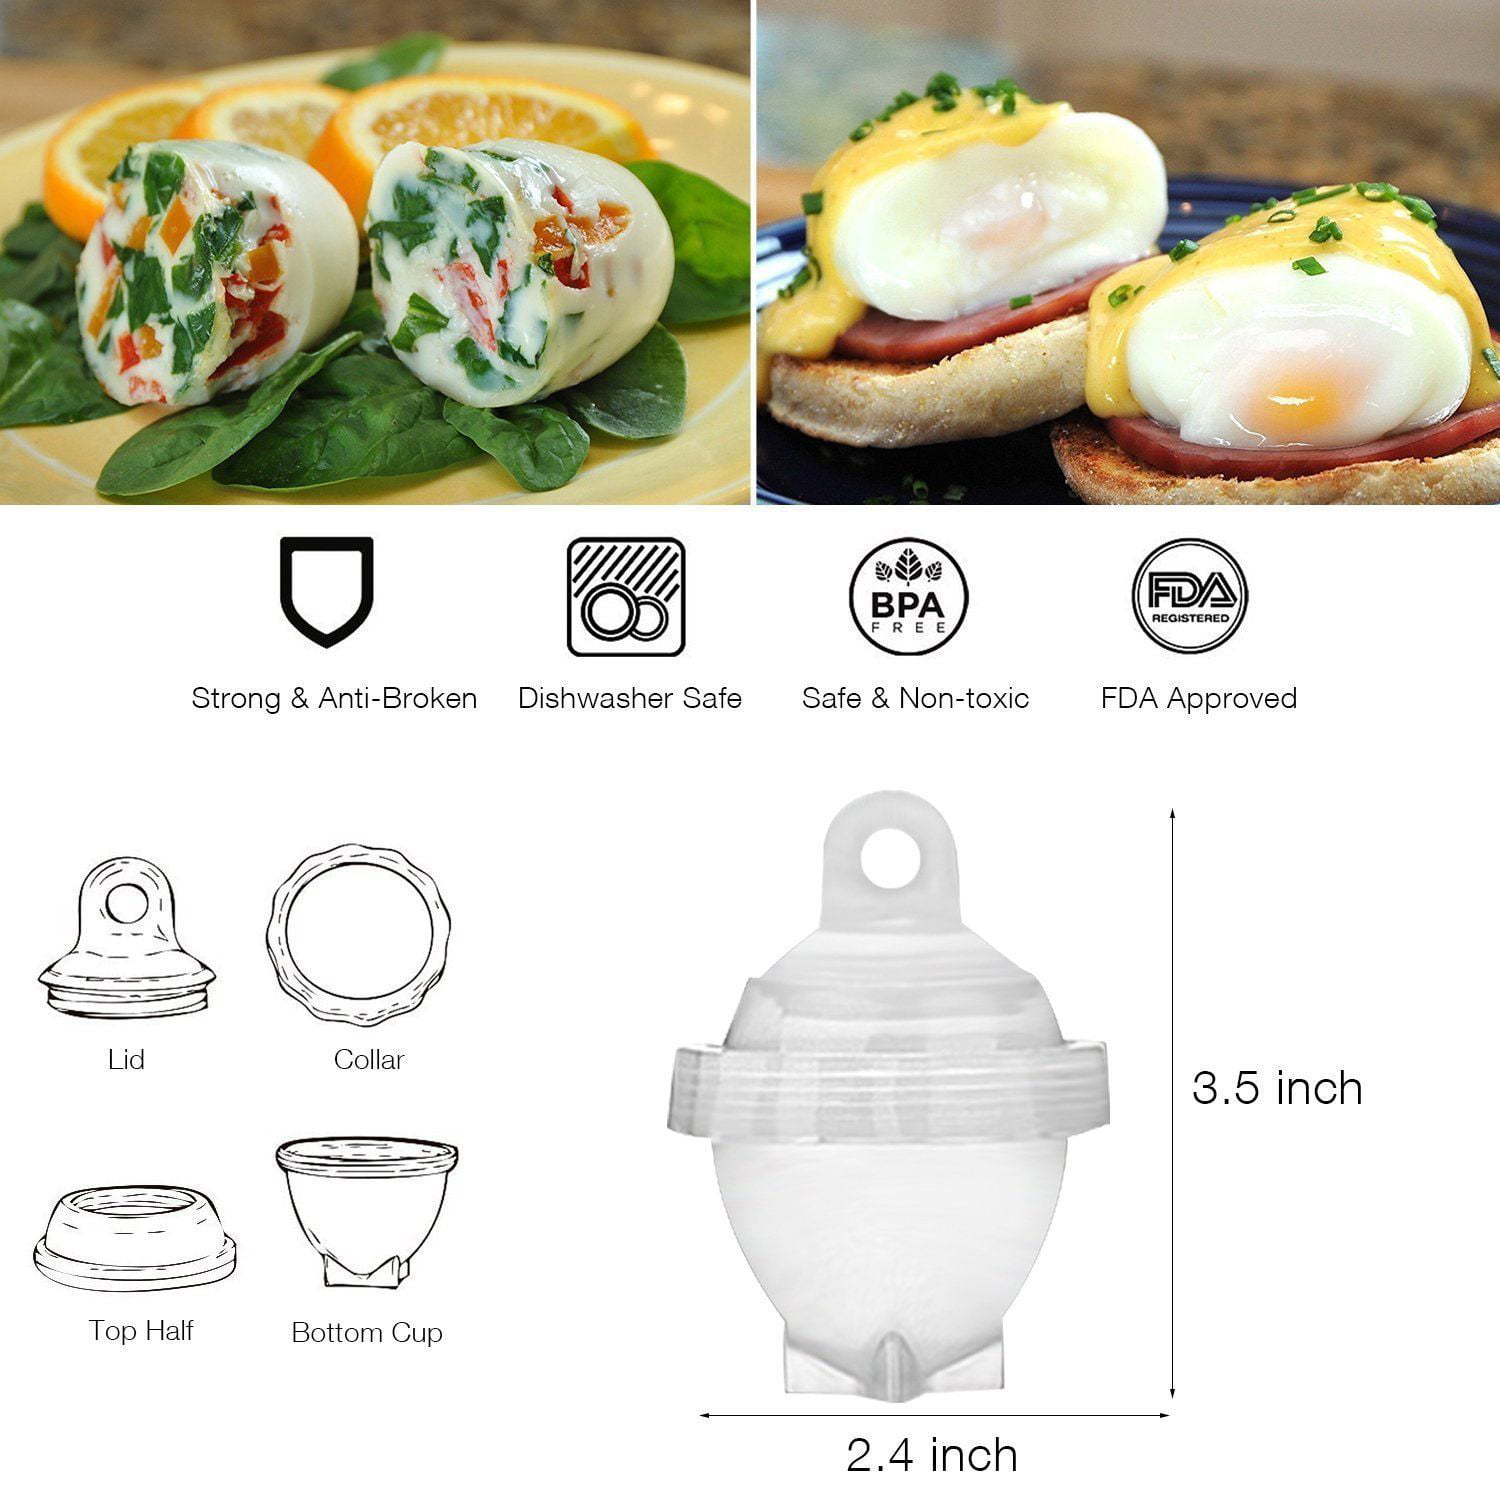 Egglettes - Egg Cooker Hard & Soft Maker, No Shell, Non Stick